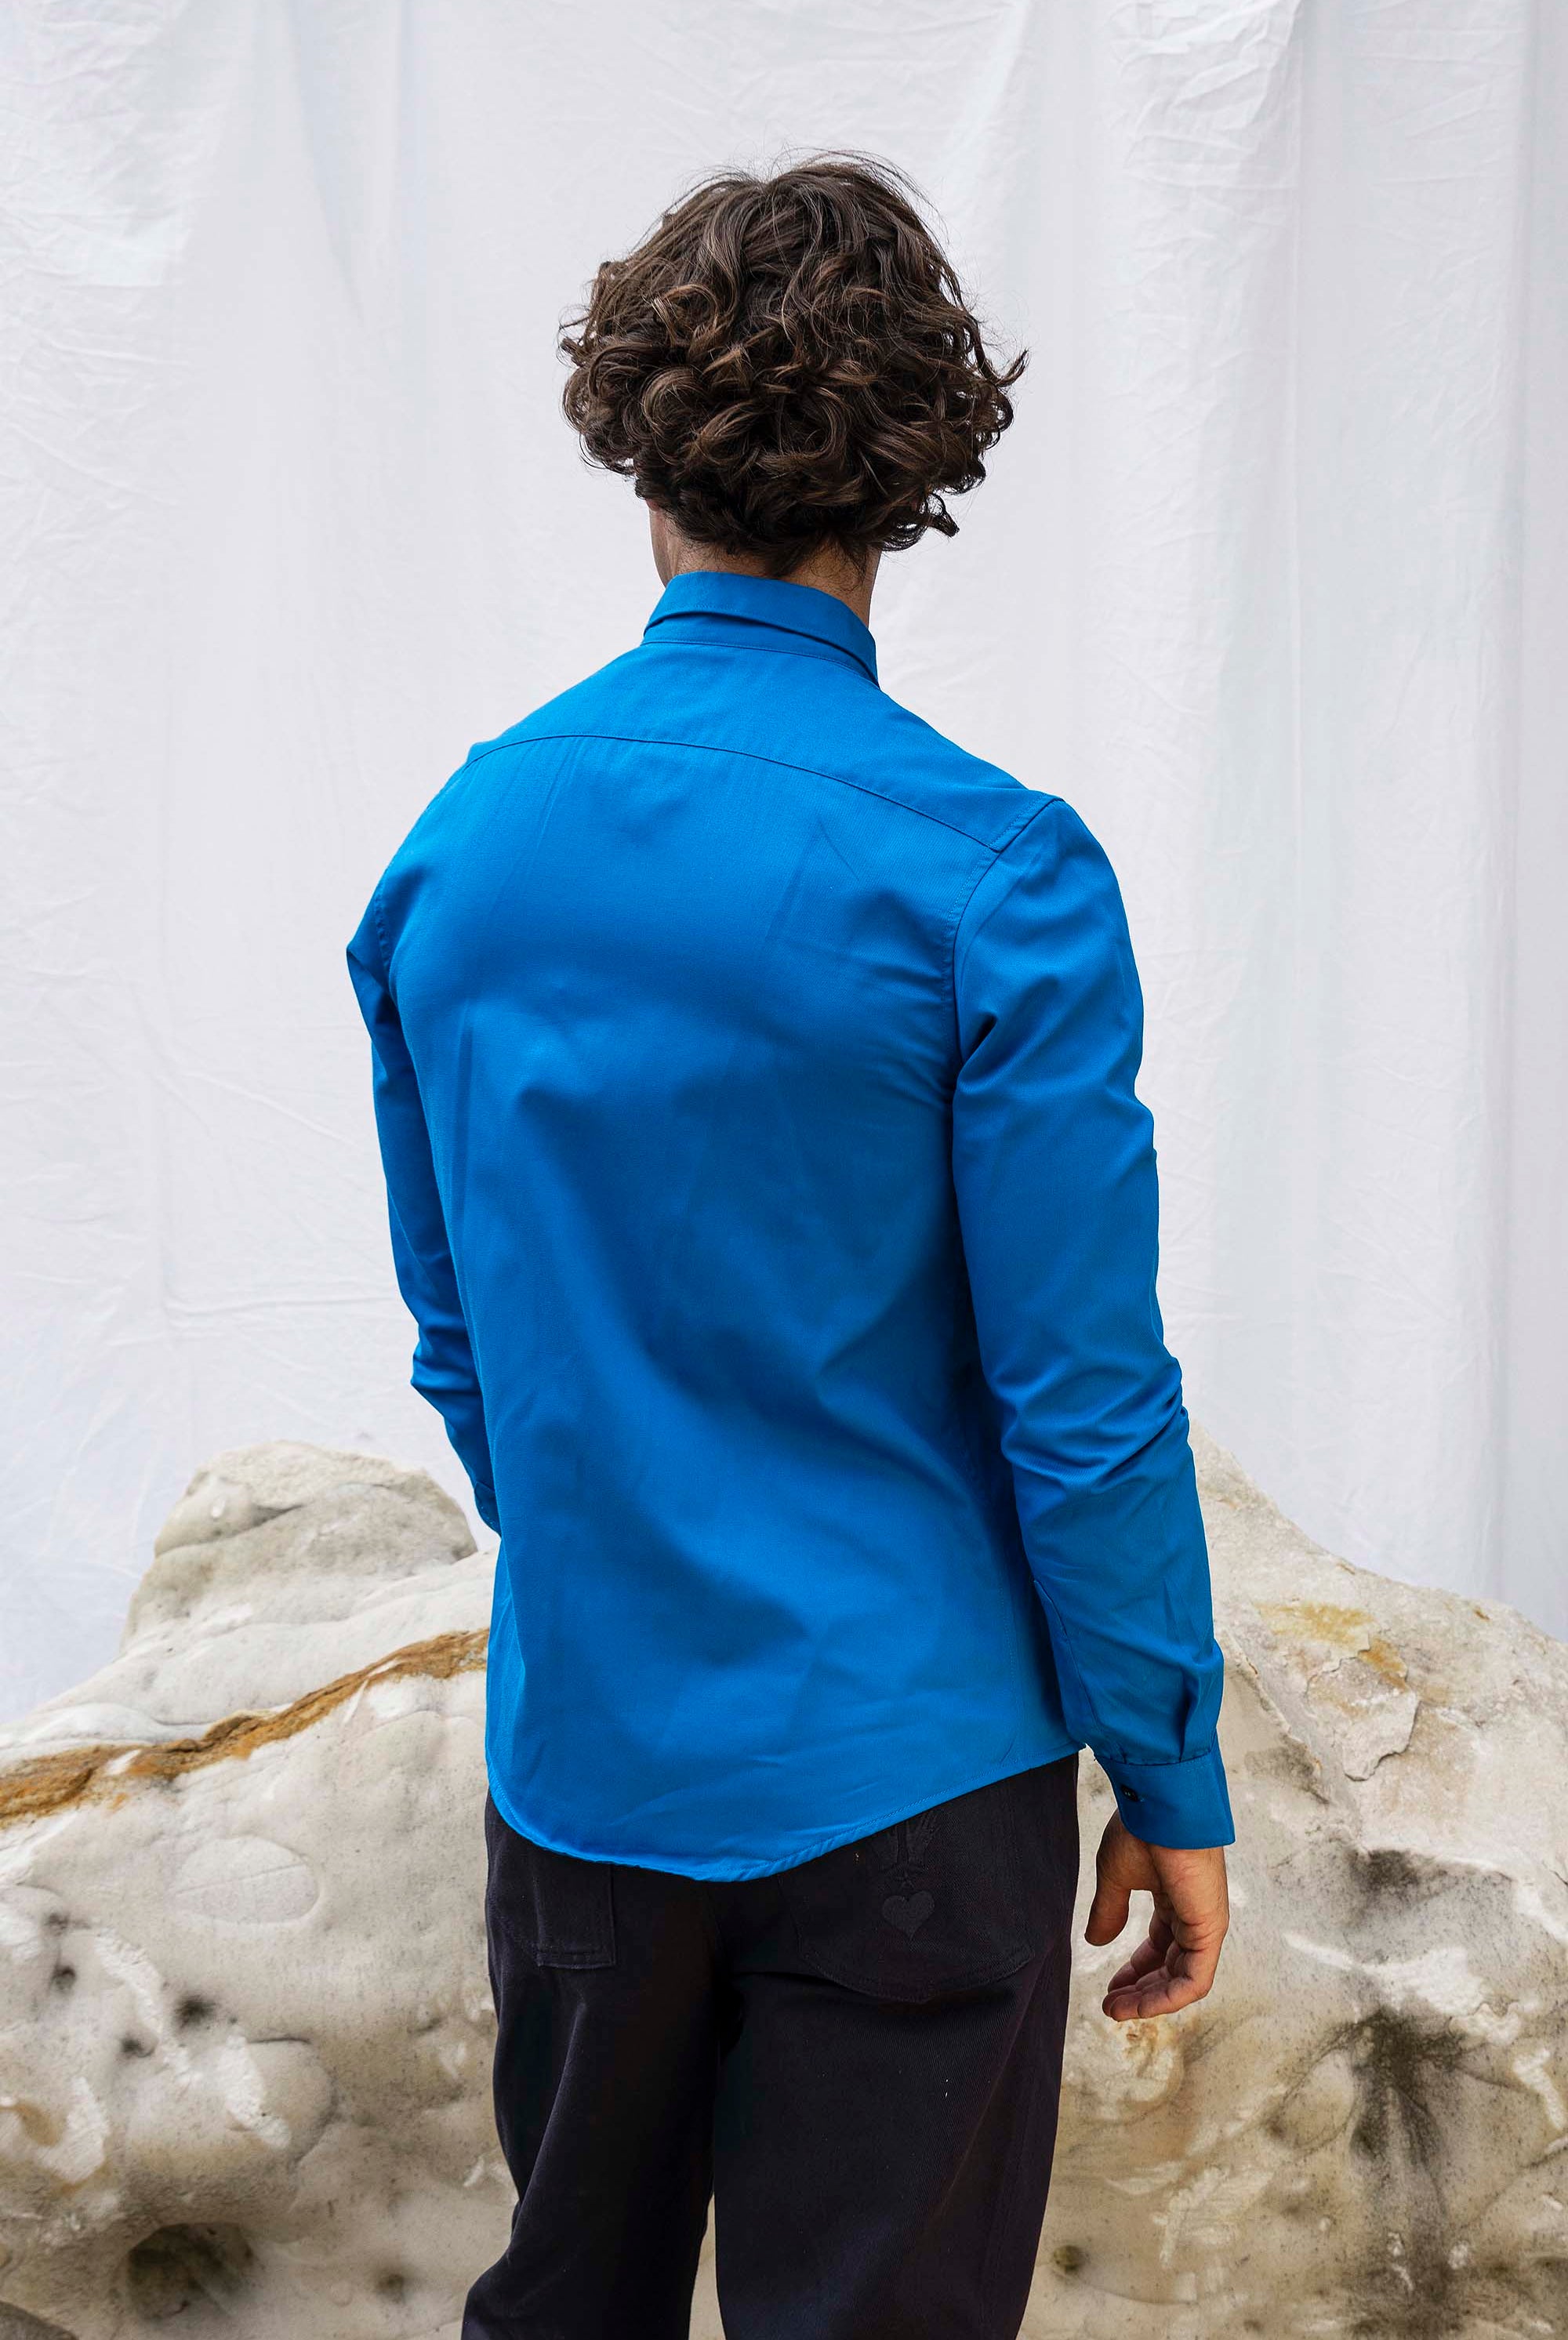 Chemise Formacion Bleu slim fit, ajustée, chic et élégante, chemise mode fashion commerce équitable